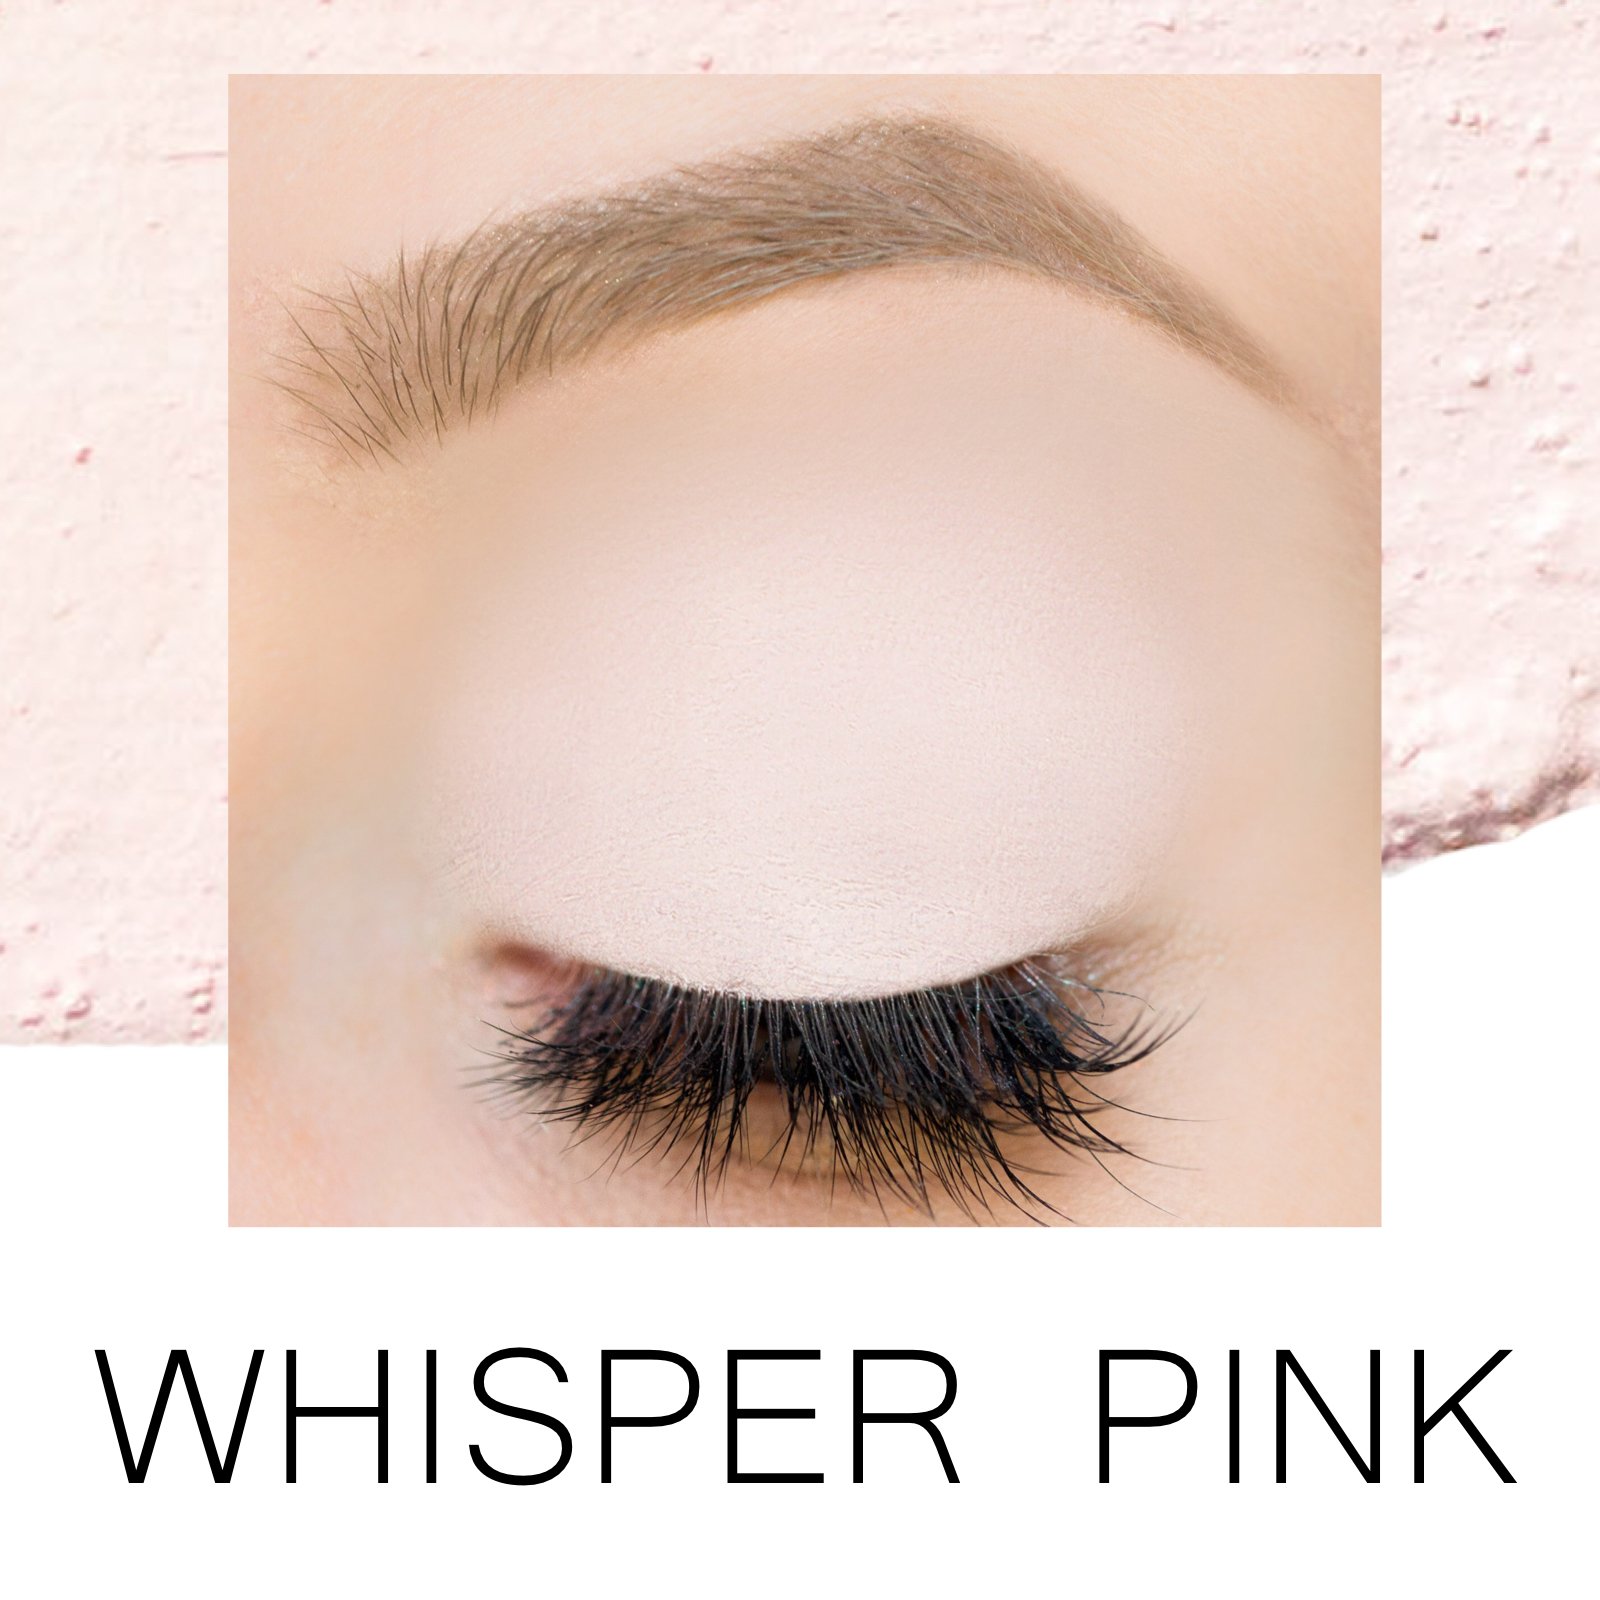 Whisper pink label.jpg